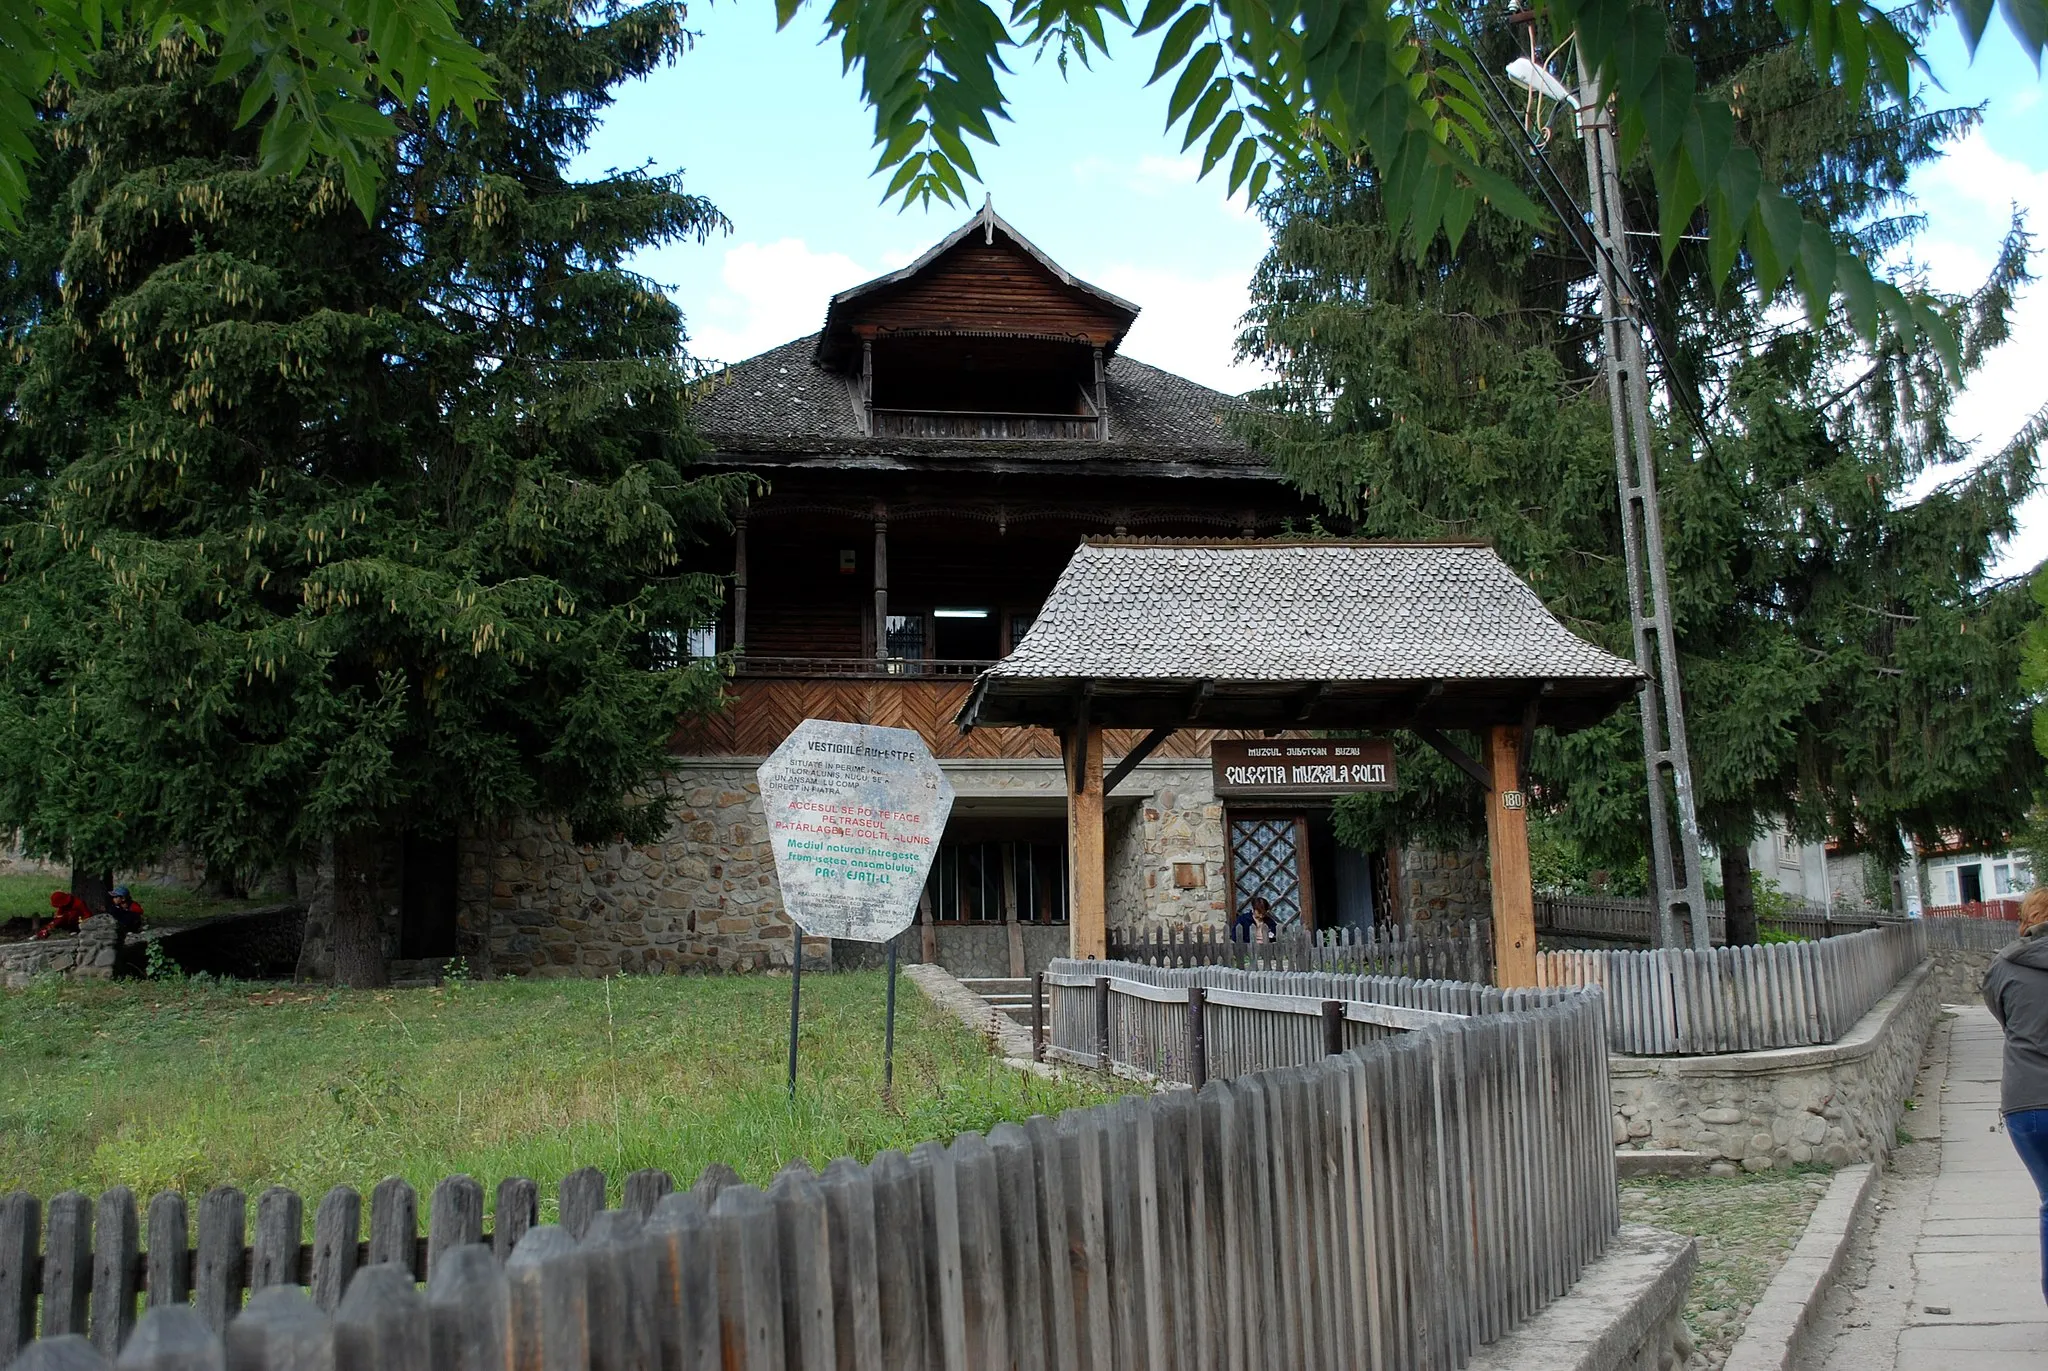 Photo showing: The Amber Museum in Colţi, Buzău, Romania